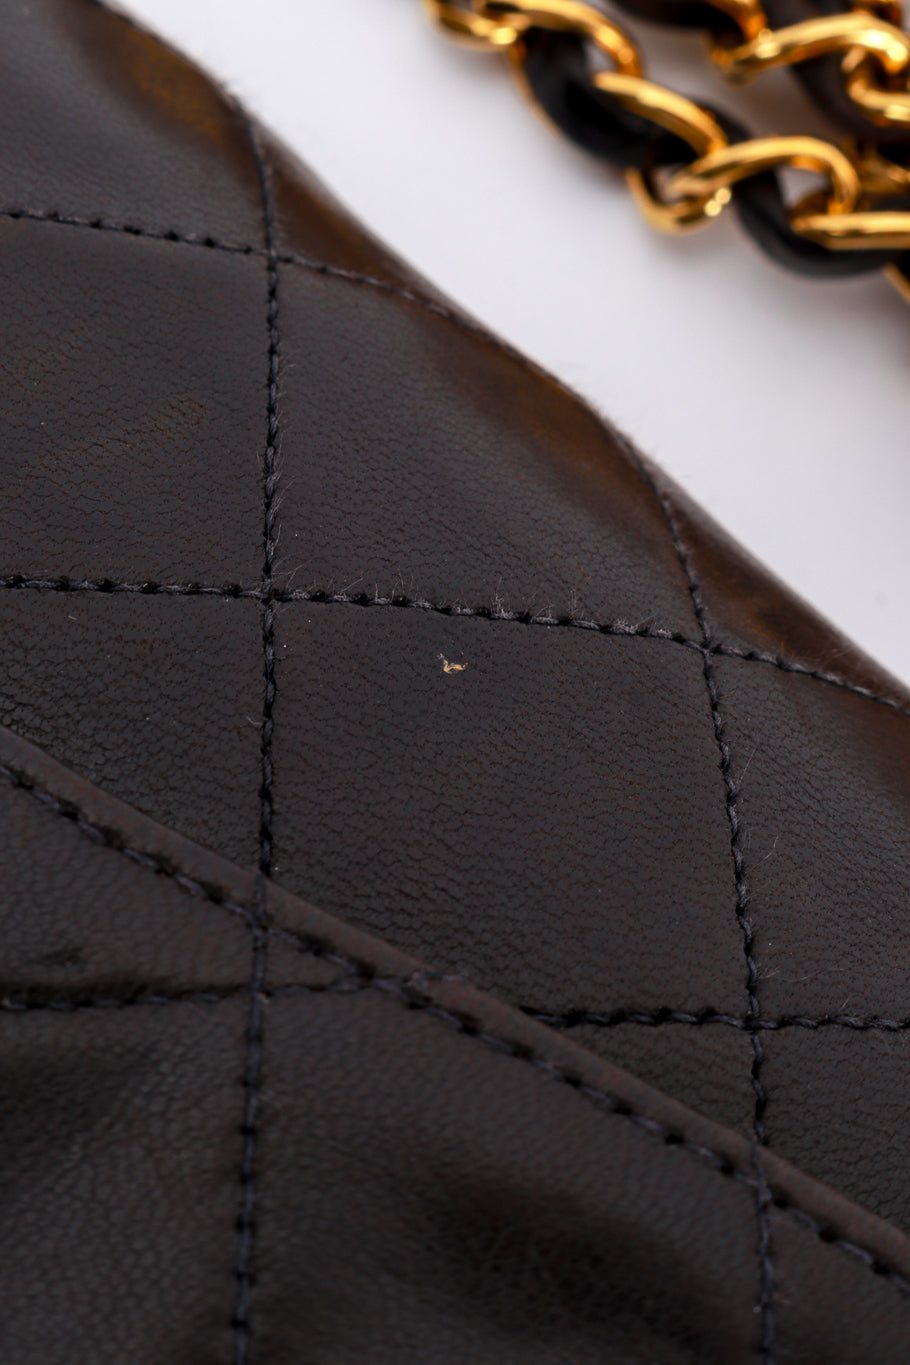 Chanel Classic Double Flap Bag wear detail @RECESS LA